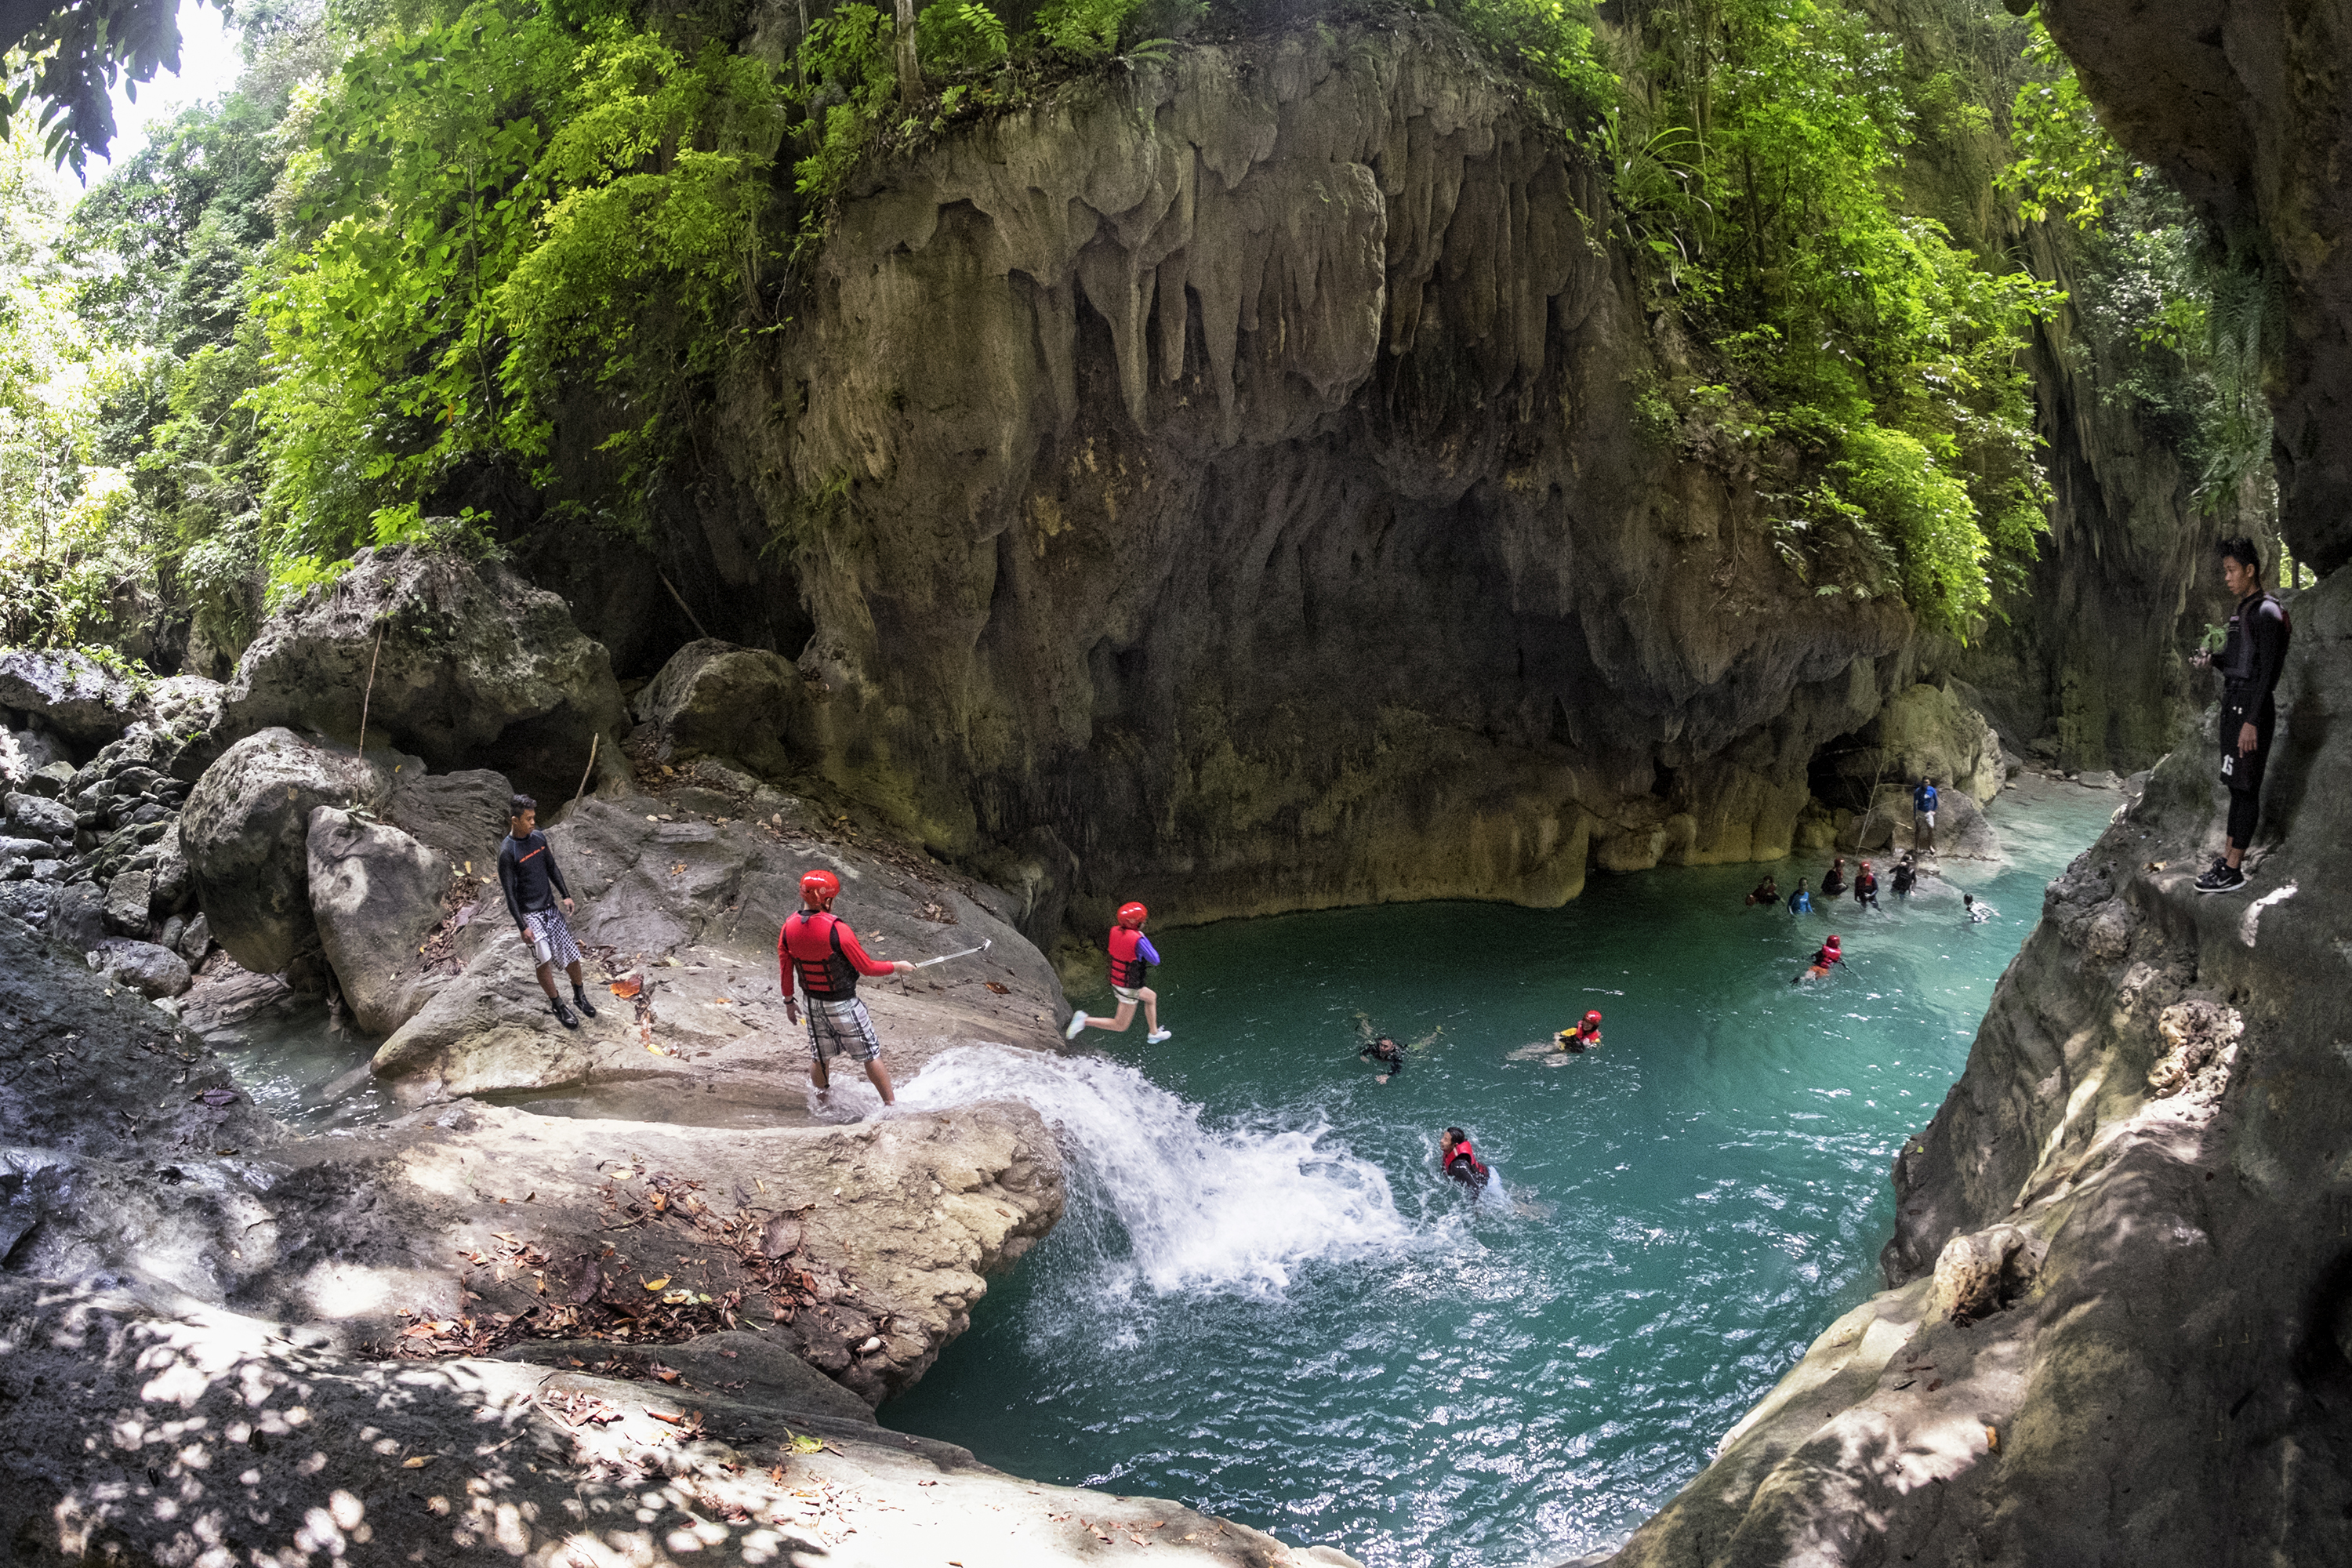 People jumping during the canyoneering tour at Kawasan Falls